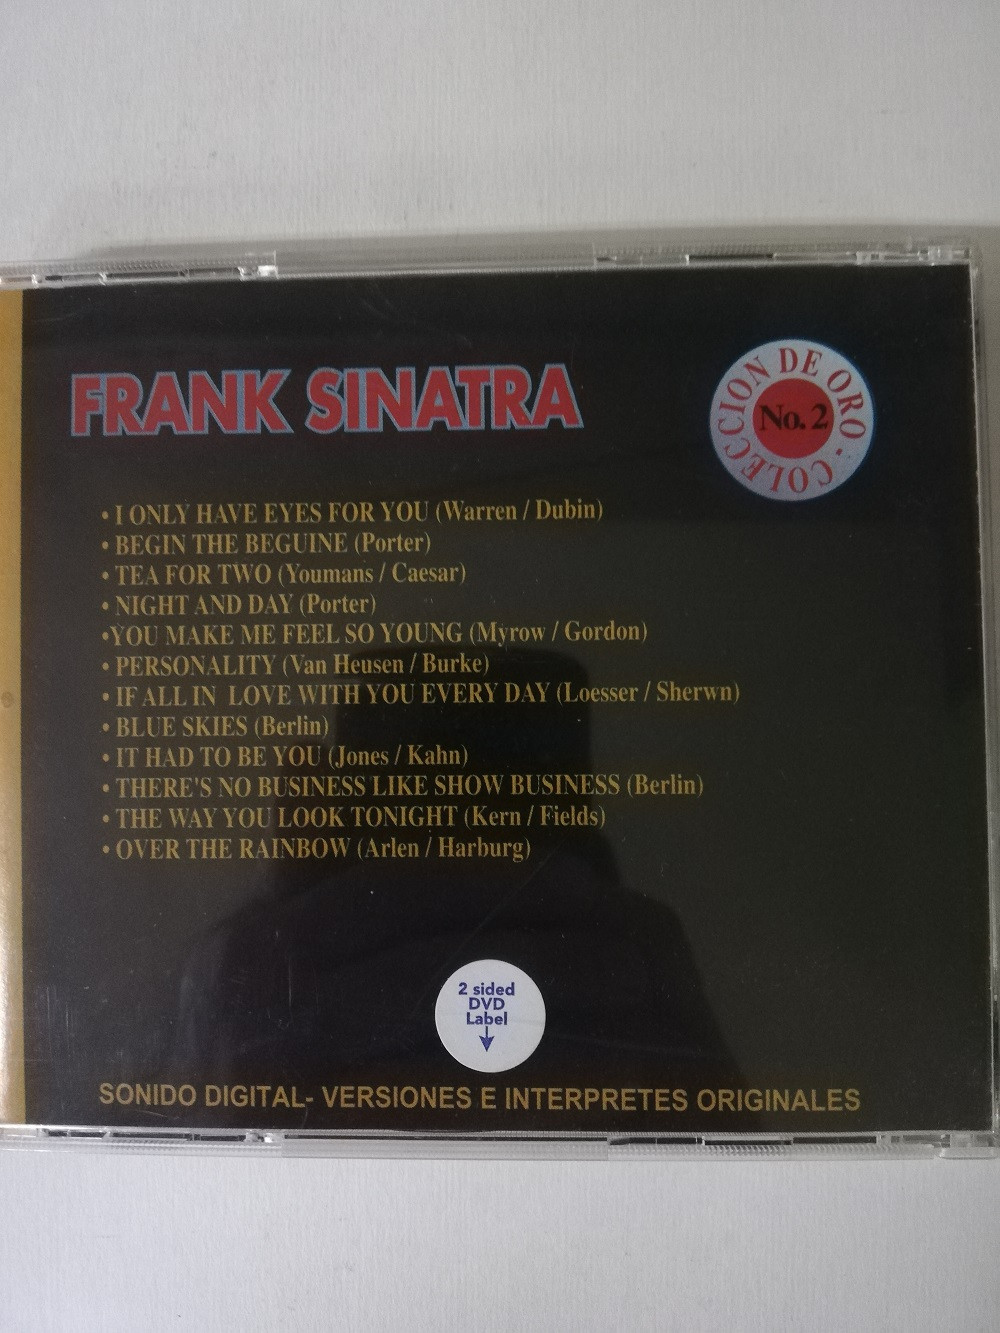 Imagen CD FRANK SINATRA - COLECCIÓN DE ORO No. 2 2